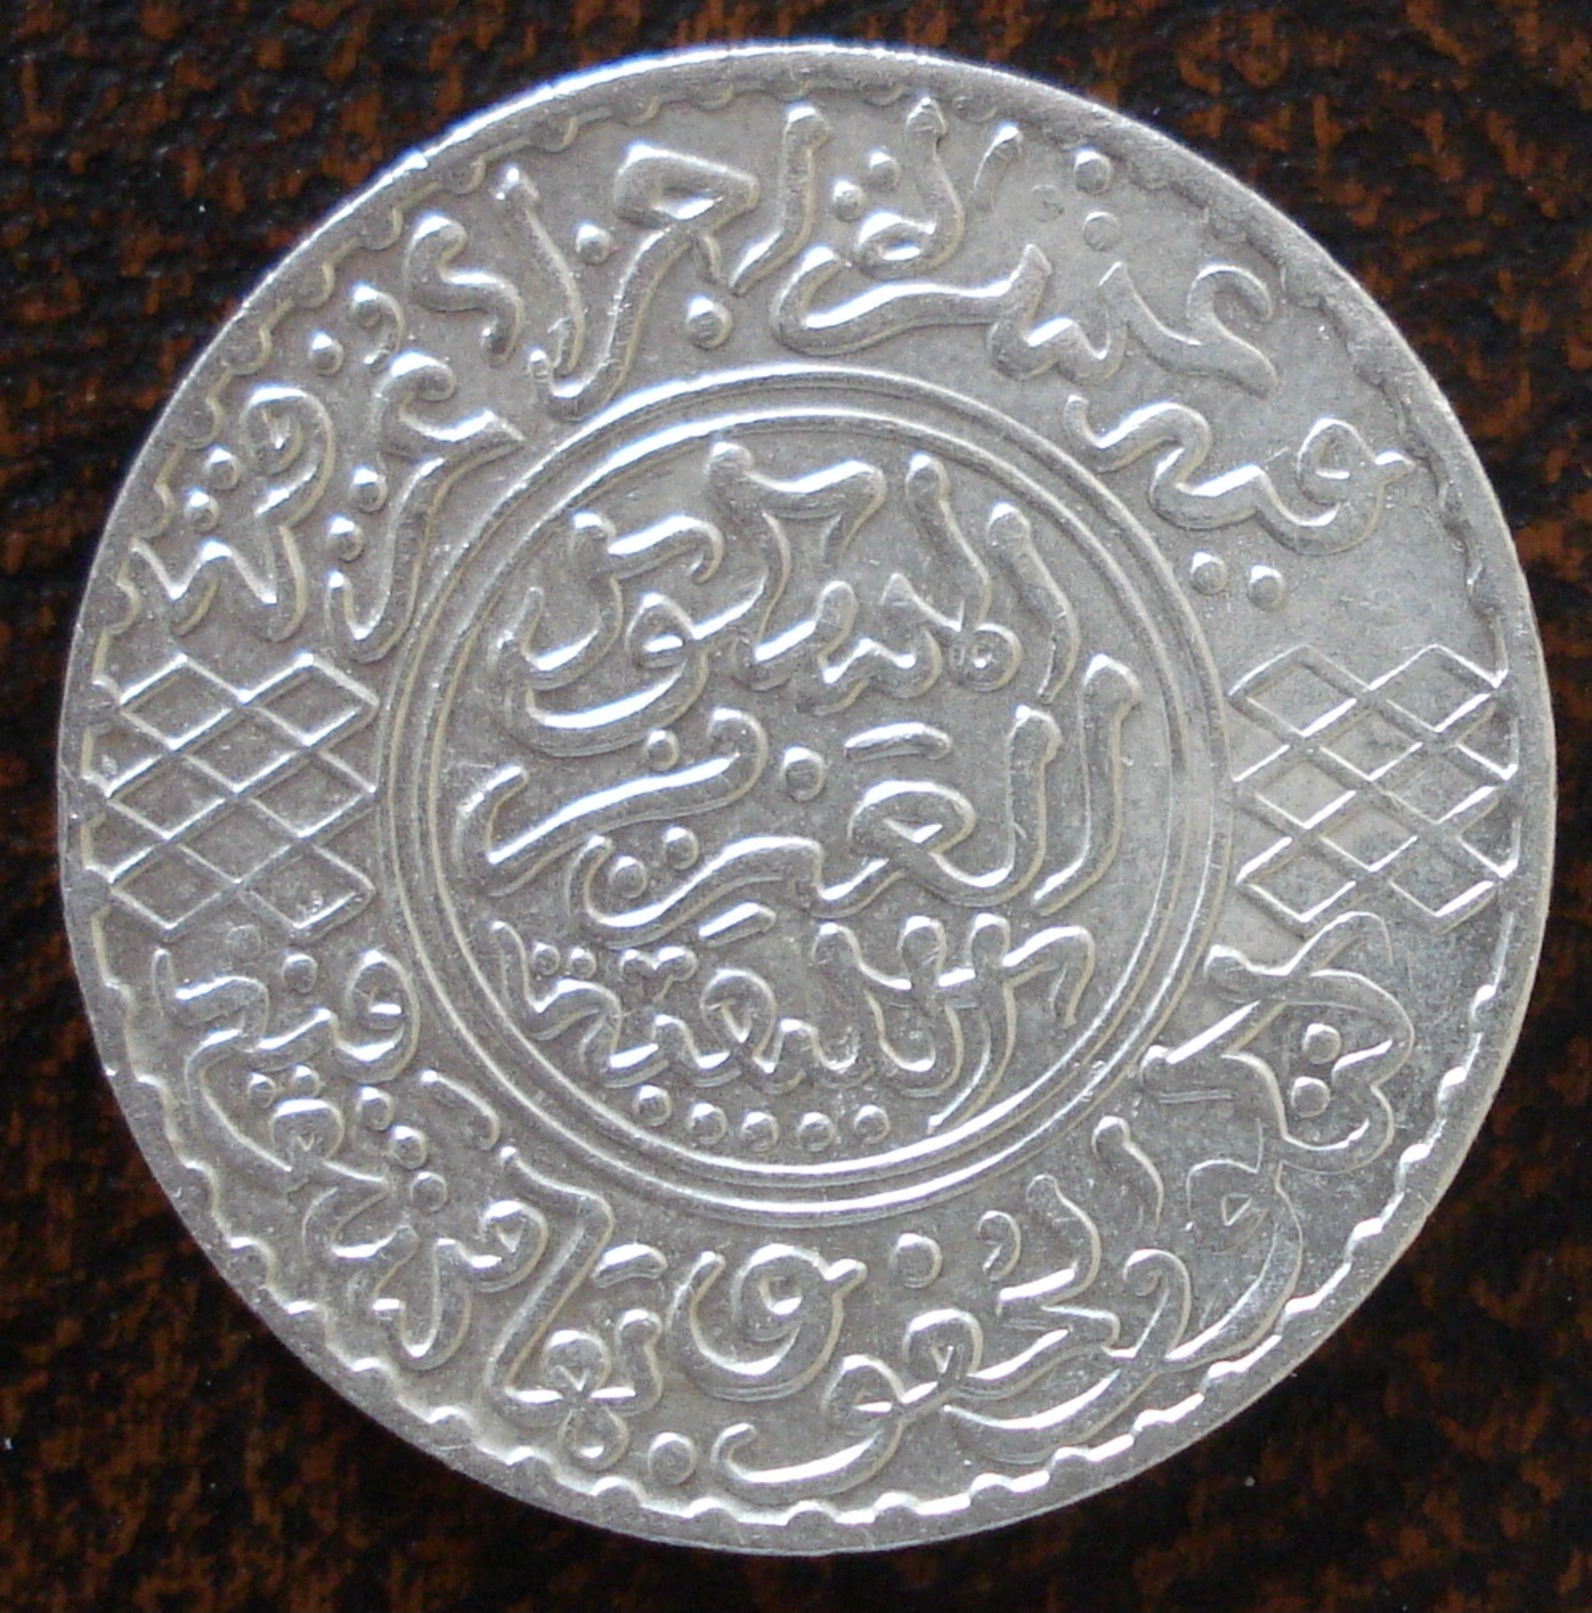 (J) MOROCCO: Silver 5 Dirhams 1903 AU (AH1321Ln) (898) SALE!!!!! - Maroc